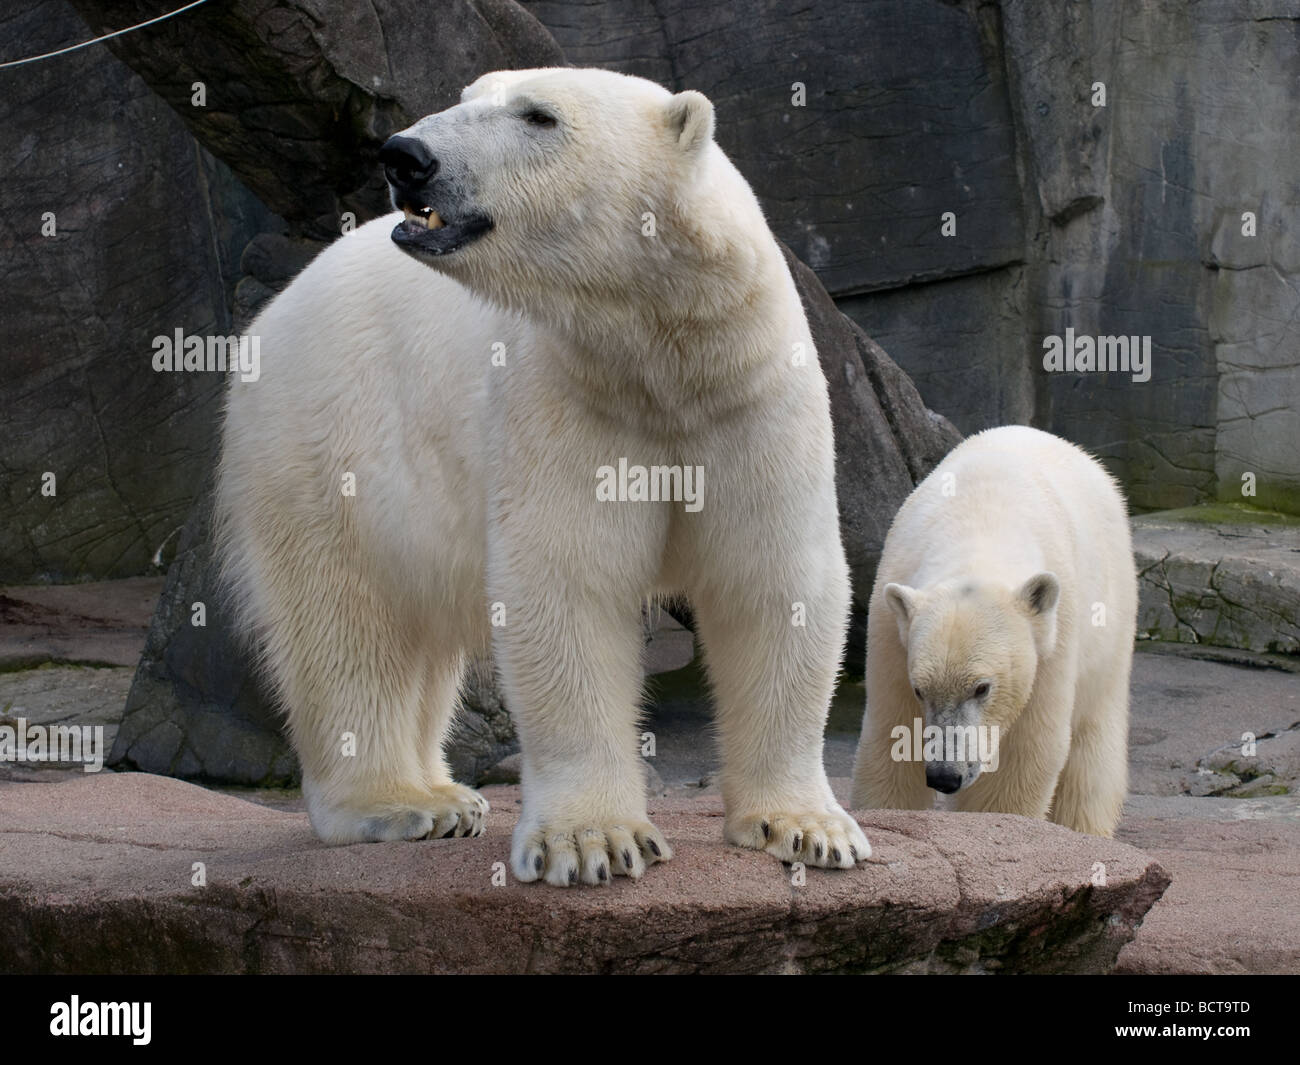 Two polar bears at the Copenhagen Zoo. Stock Photo